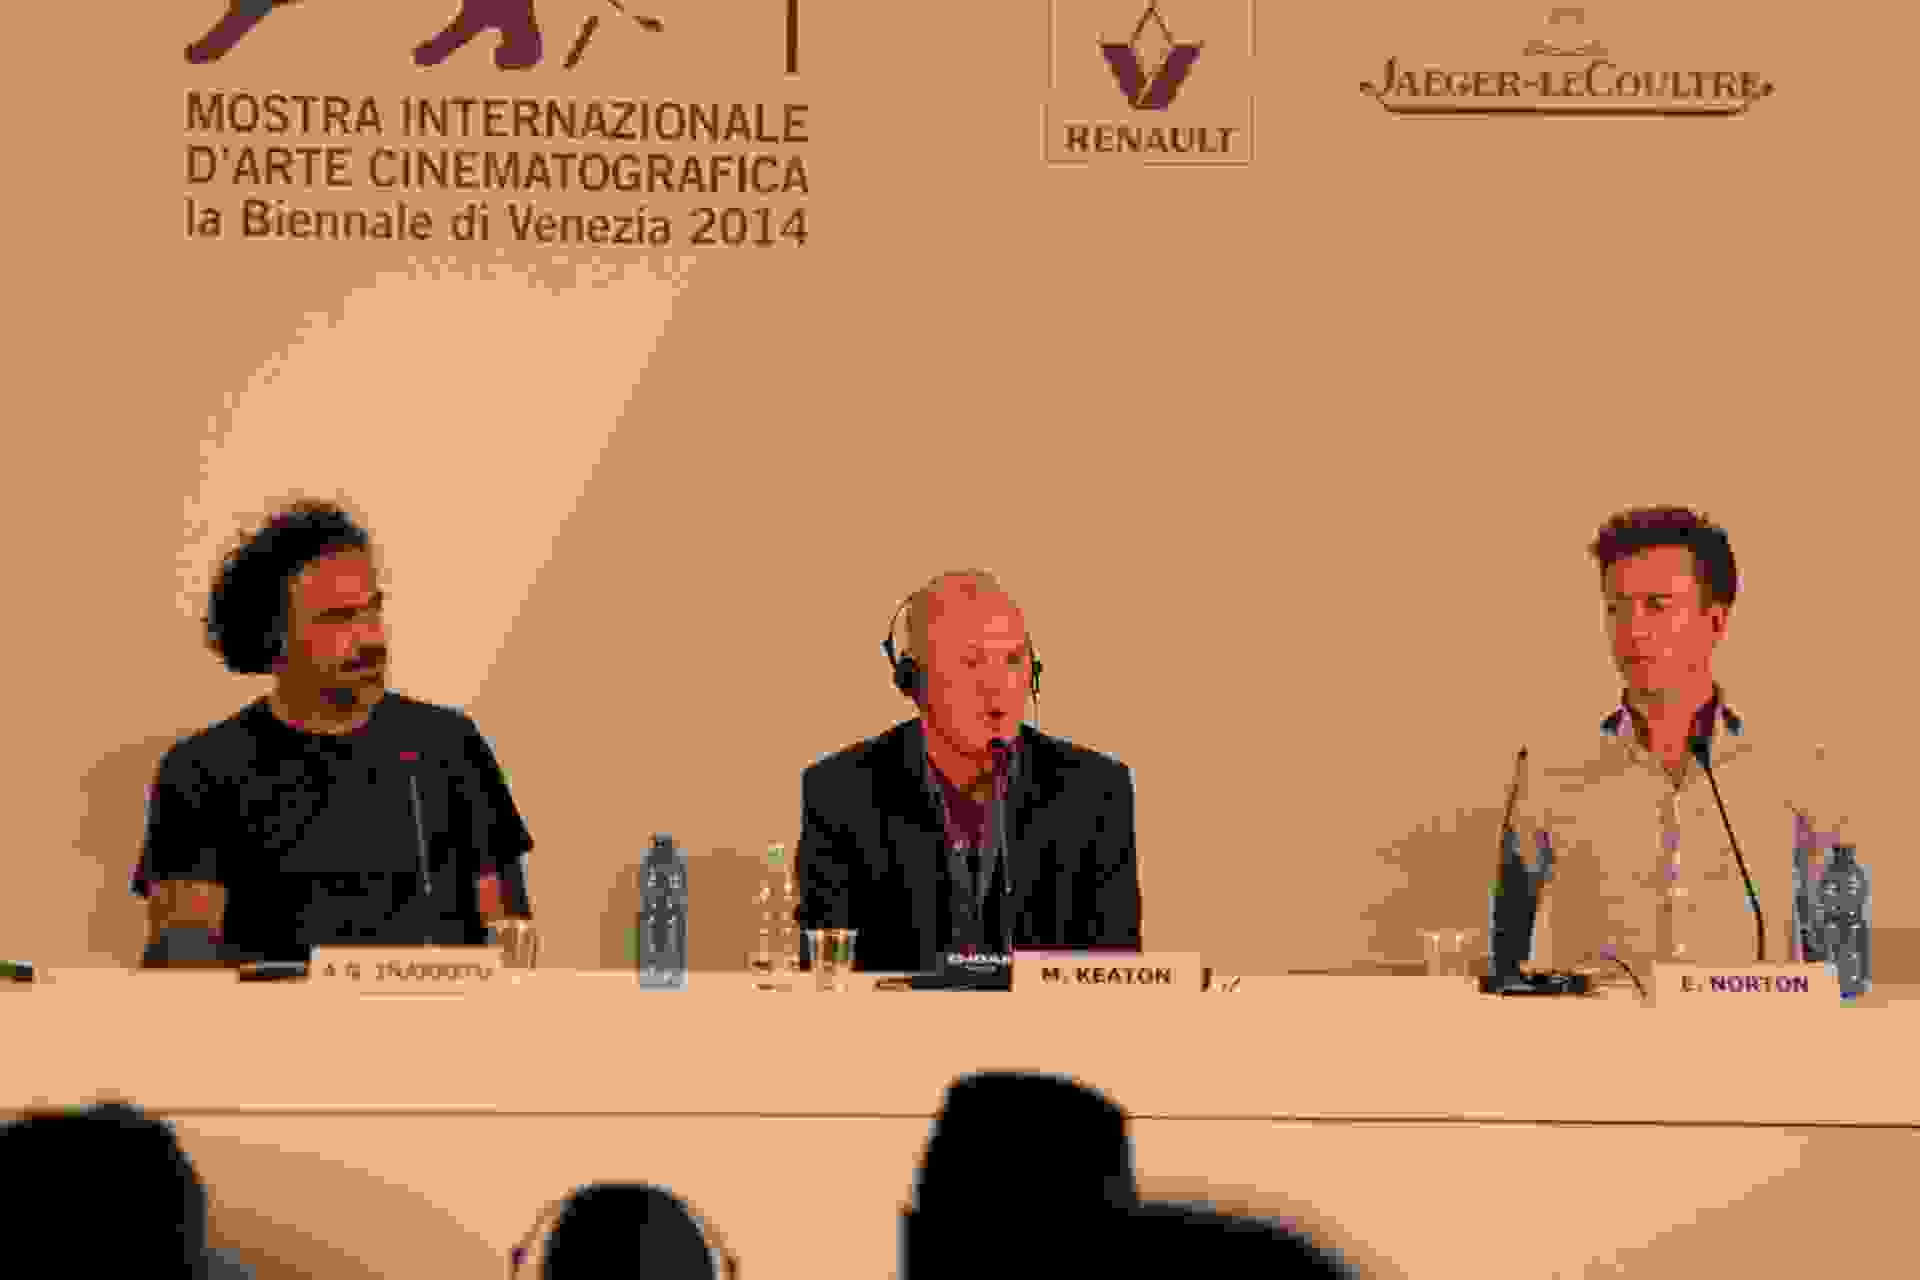 Michael Keaton, Edward Norton and Alejandro González Iñárritu